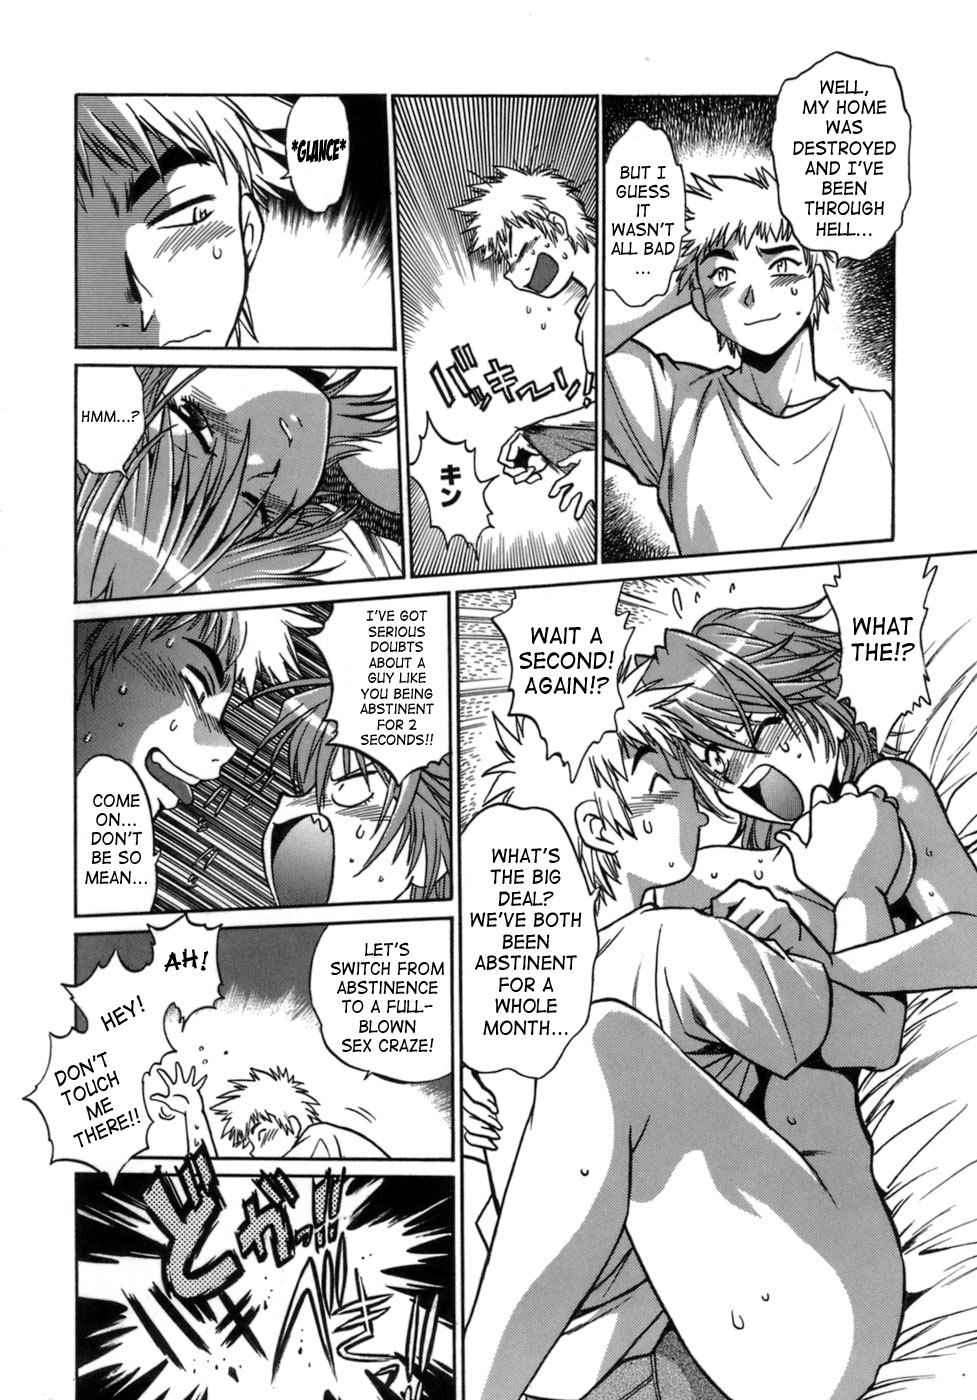 Tail Chaser Vol.1 96 hentai manga